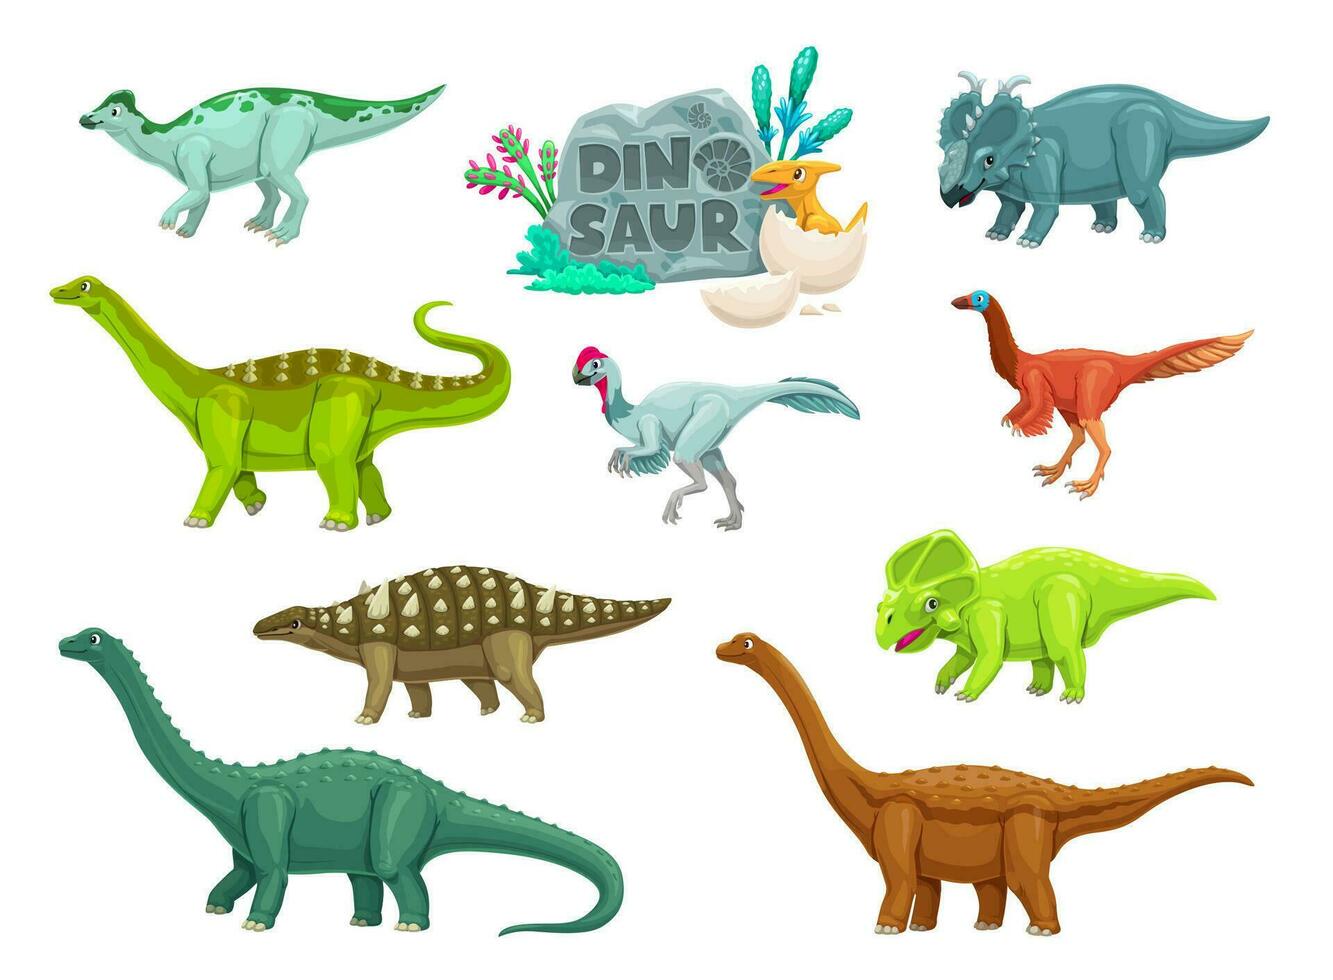 Cartoon dinosaurs ancient reptiles cute characters vector